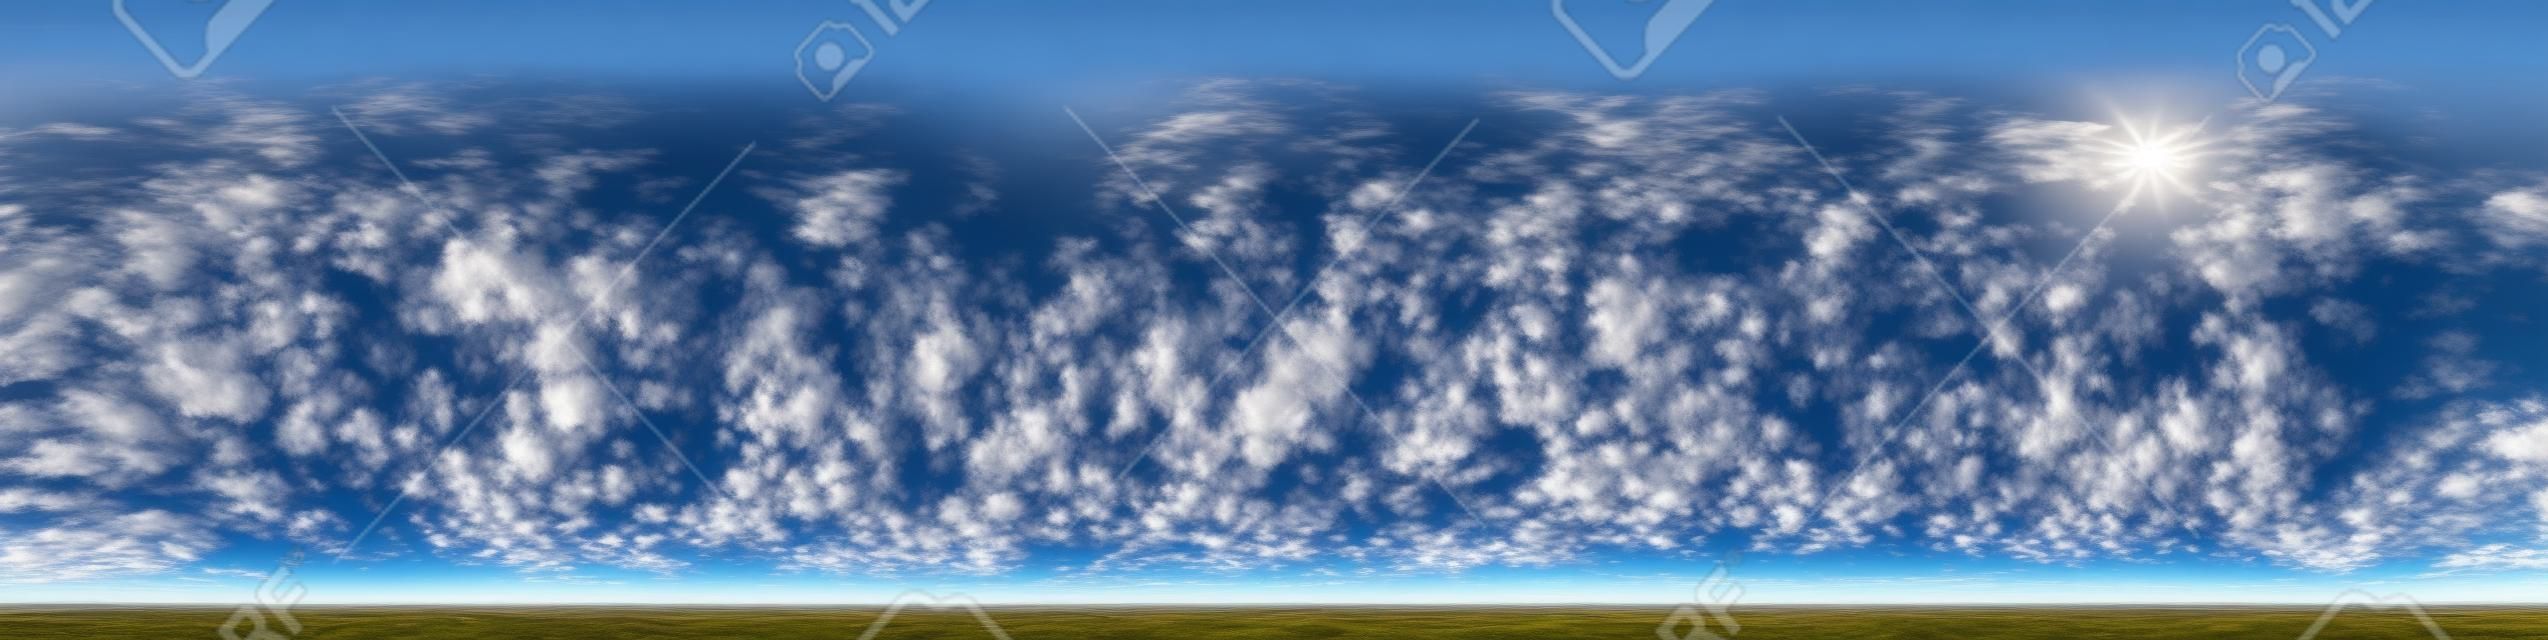 美しい素晴らしい雲と青空。スカイドームや編集ドローンショットとして3Dグラフィックスやゲーム開発で使用するための天頂とシームレスなhdriパノラマ360度の角度ビュー